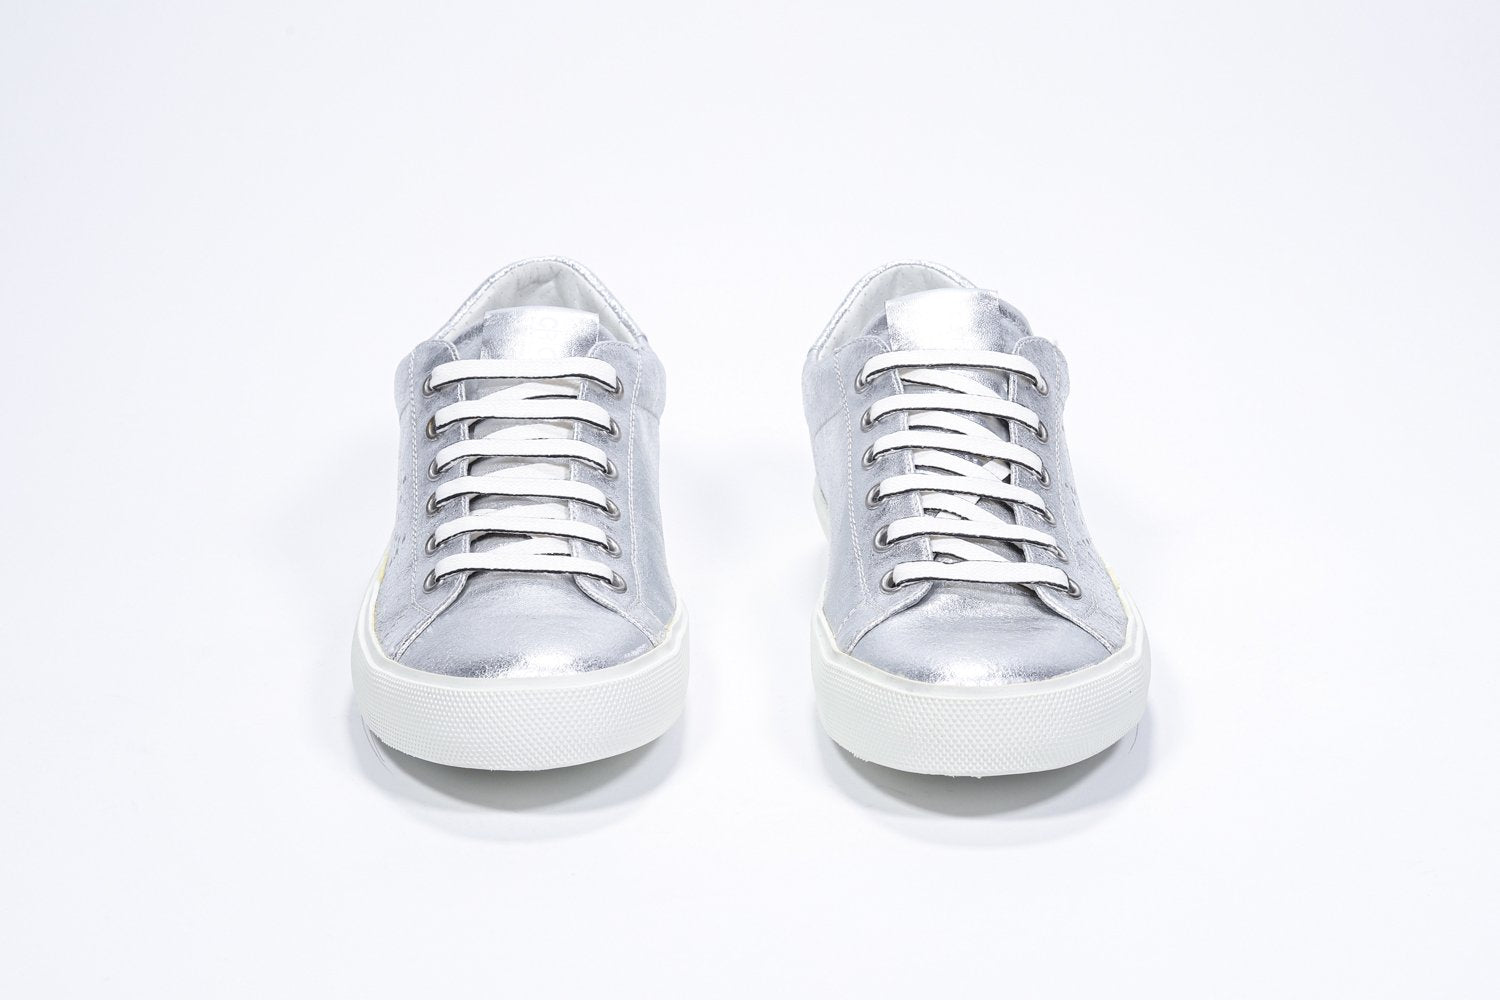 Vue avant de la chaussure basse argentée sneaker avec le logo perforé de la couronne sur la tige. Dessus en cuir métallisé et semelle en caoutchouc blanc.